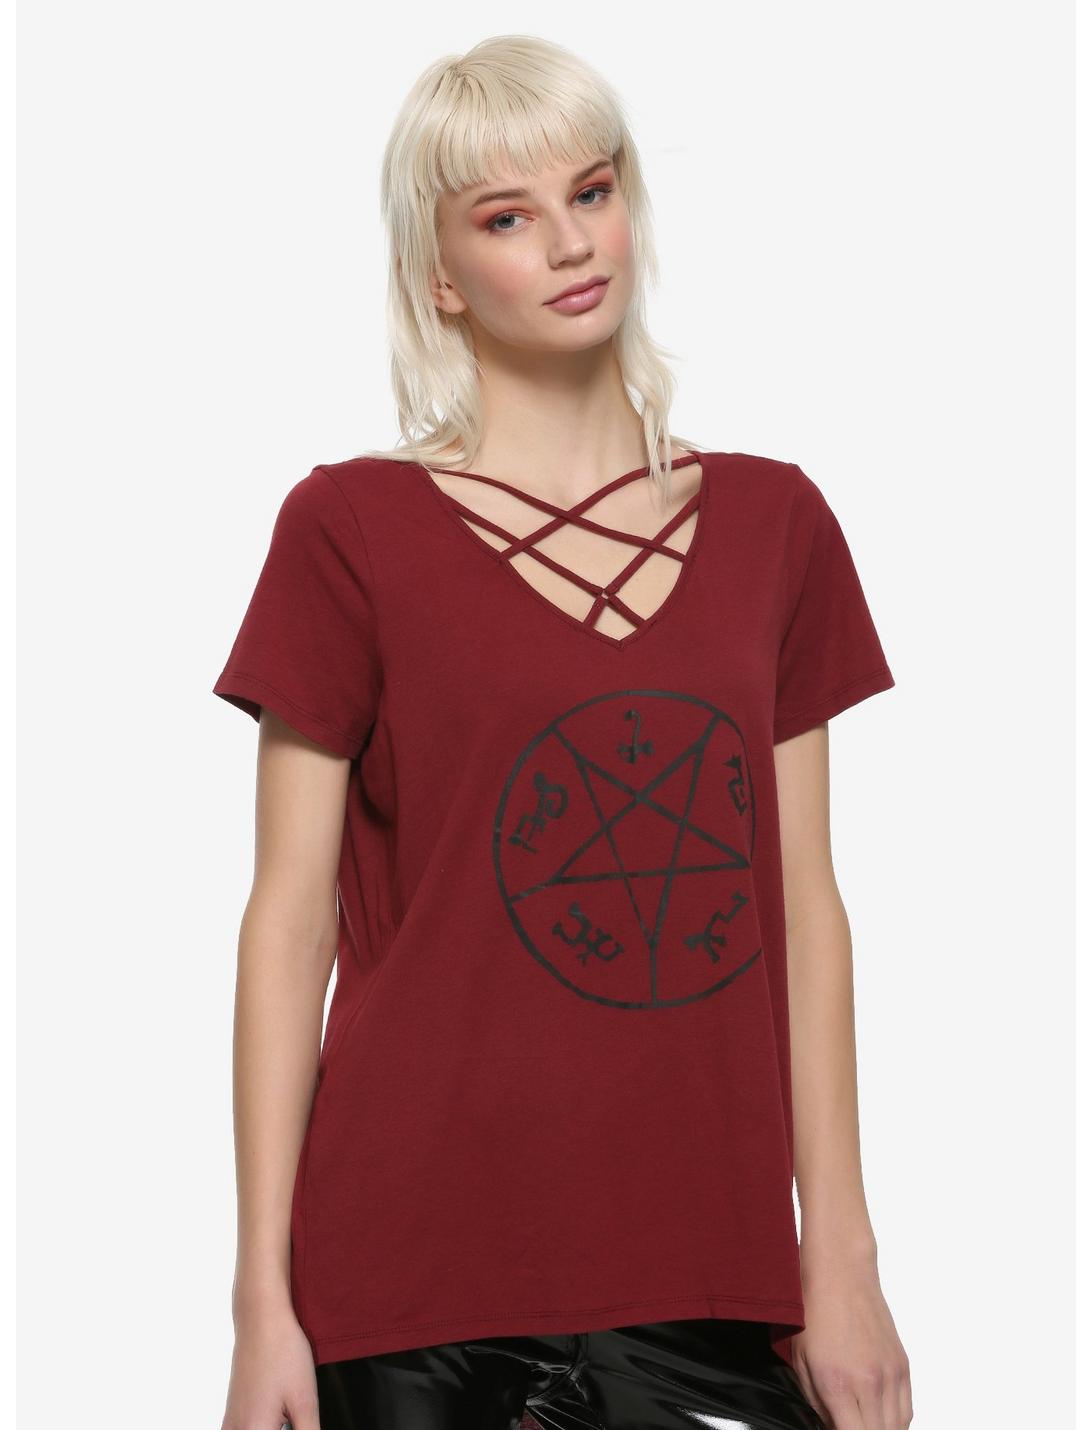 Supernatural Devil's Trap Strappy Girls T-Shirt, BLACK, hi-res